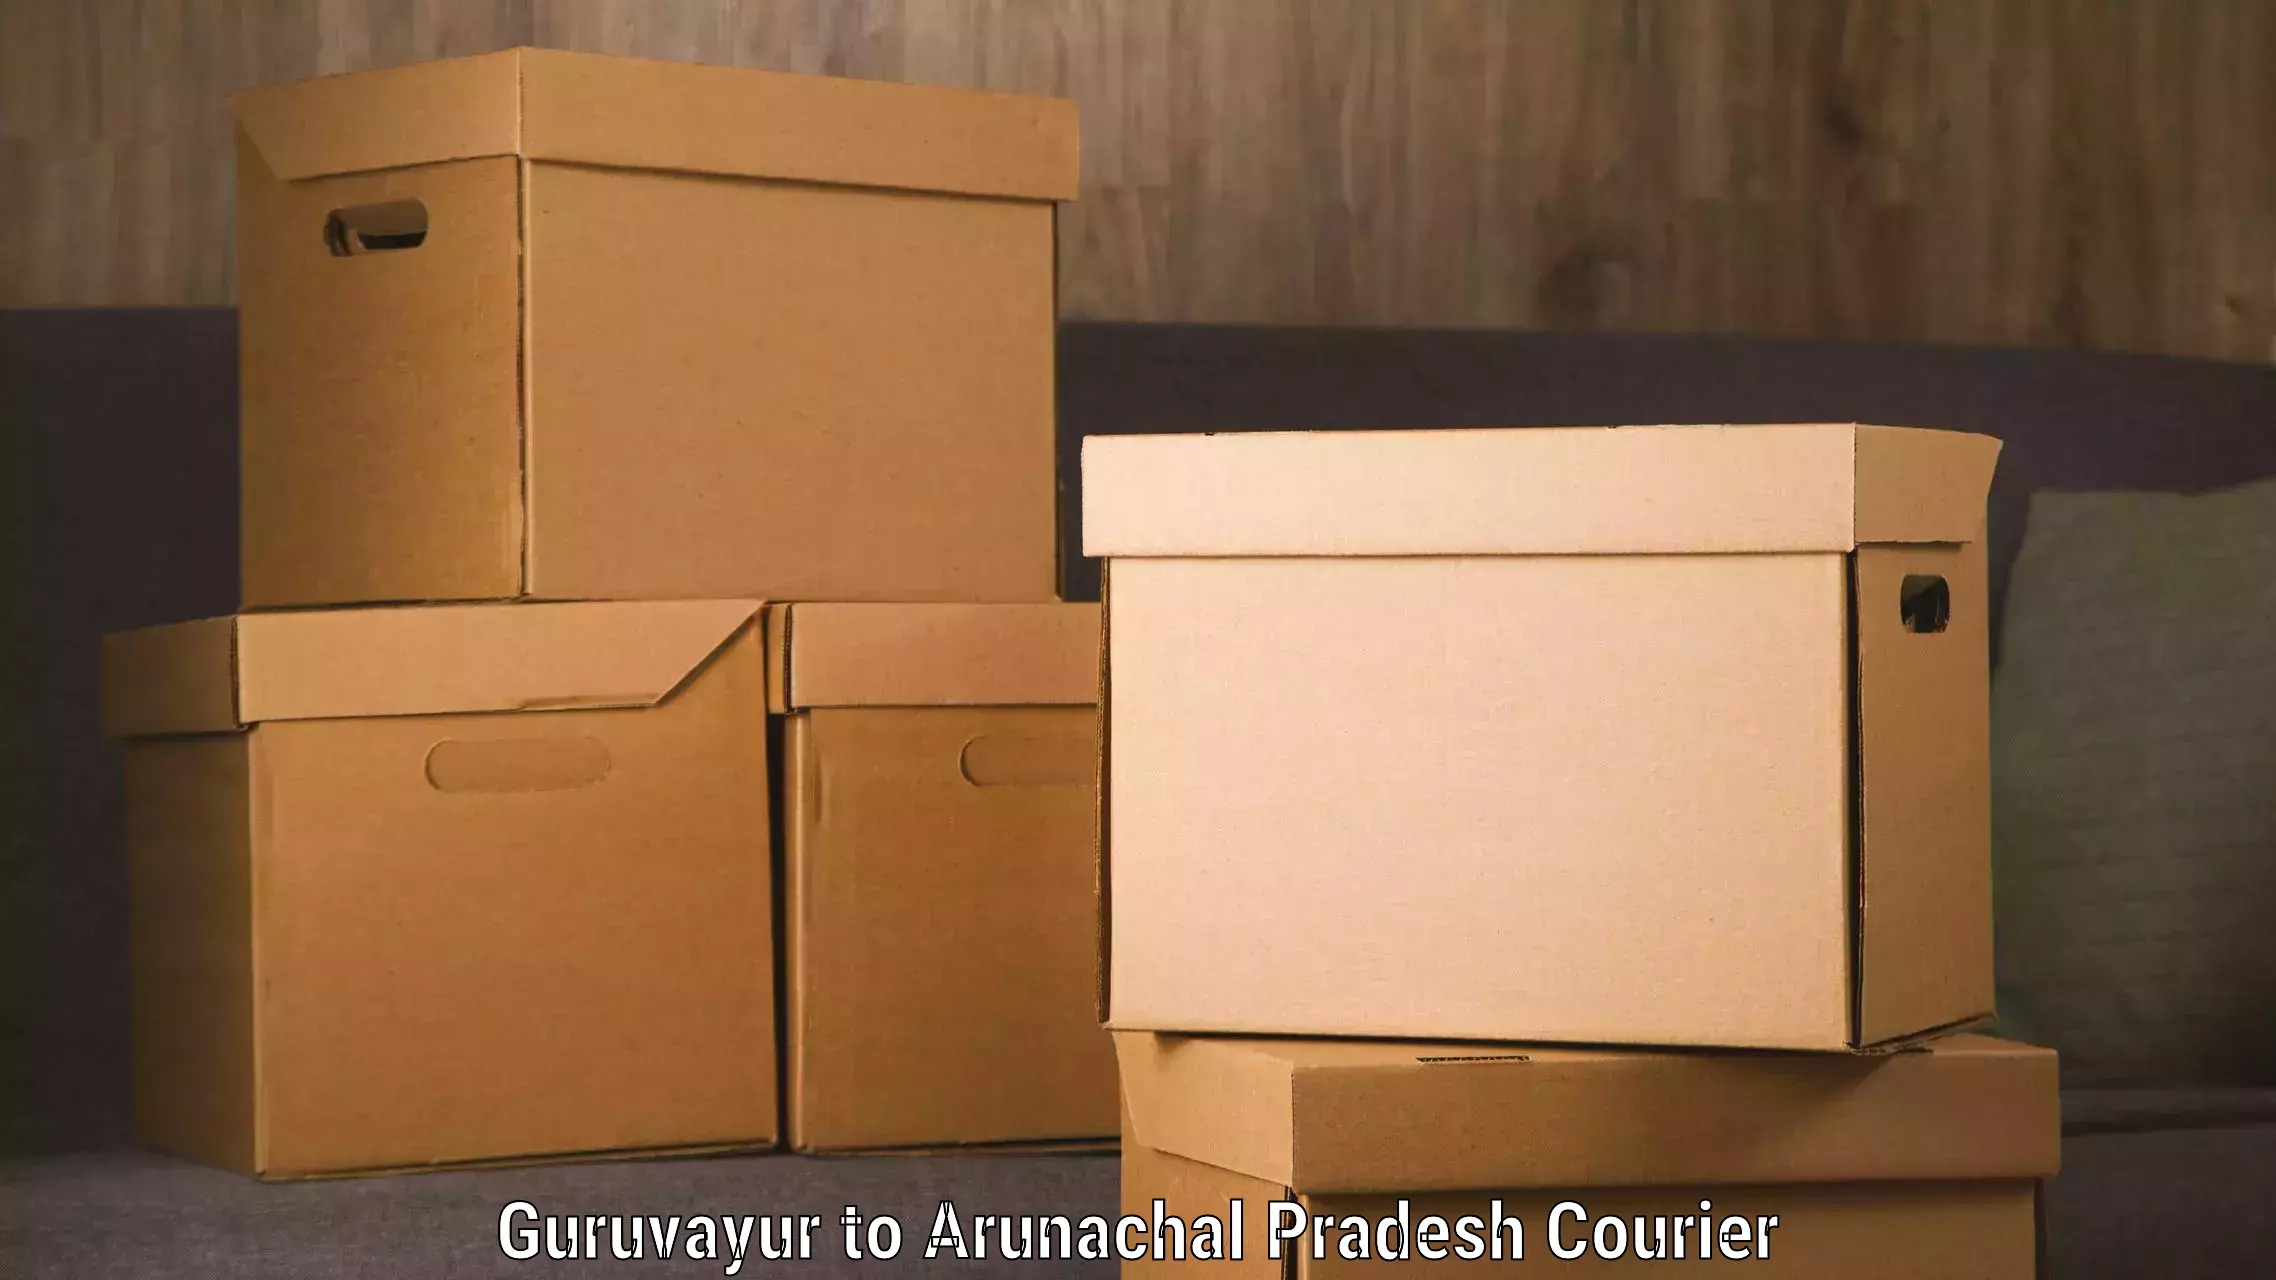 Express delivery capabilities Guruvayur to Nirjuli